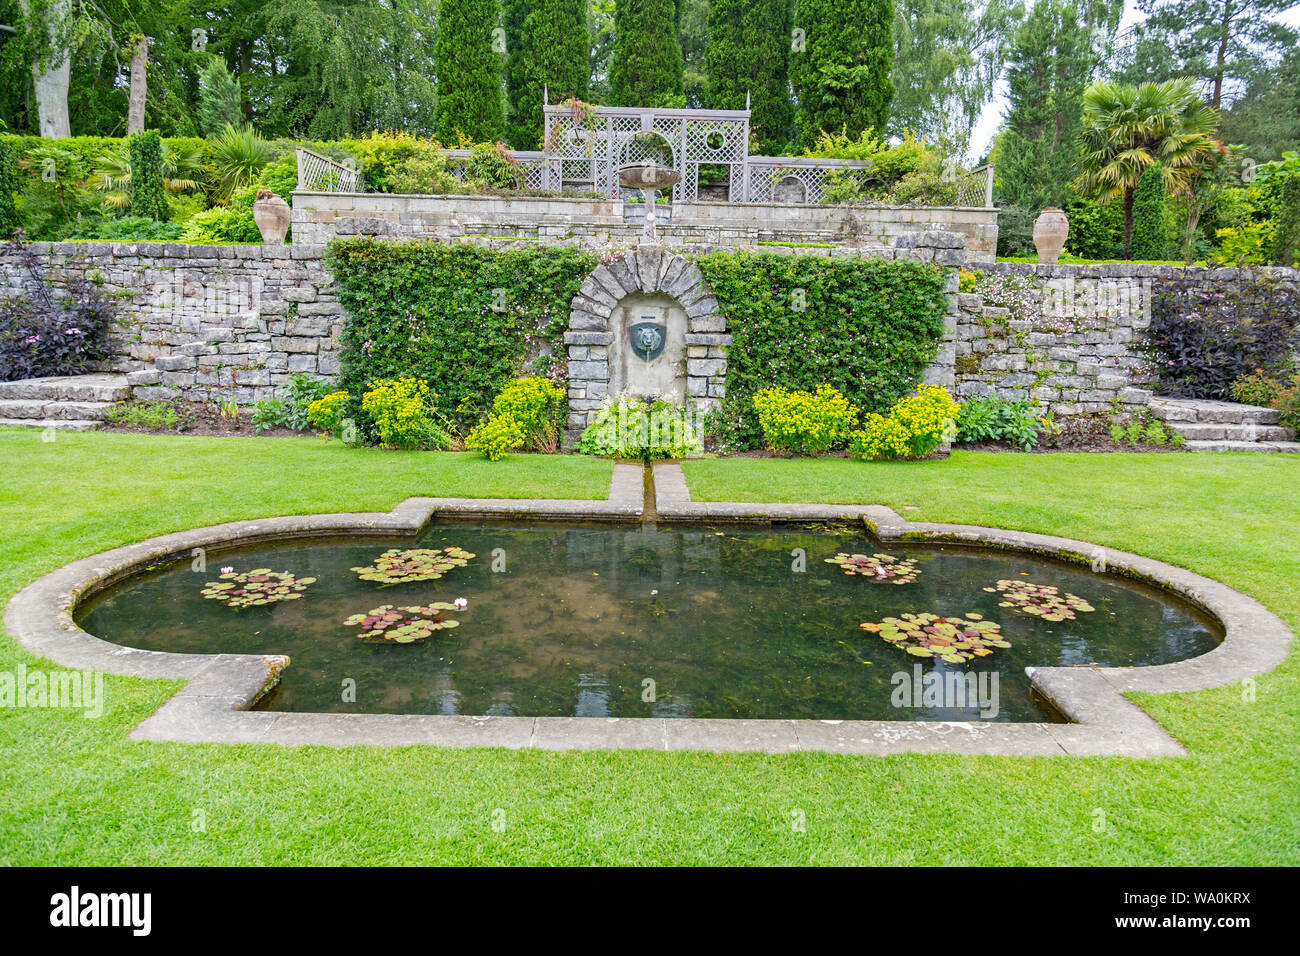 Le jardin italianisant de Plas Newydd Country house qui se trouve sur les rives de la Détroit de Menai, Anglesey, Pays de Galles, Royaume-Uni Banque D'Images